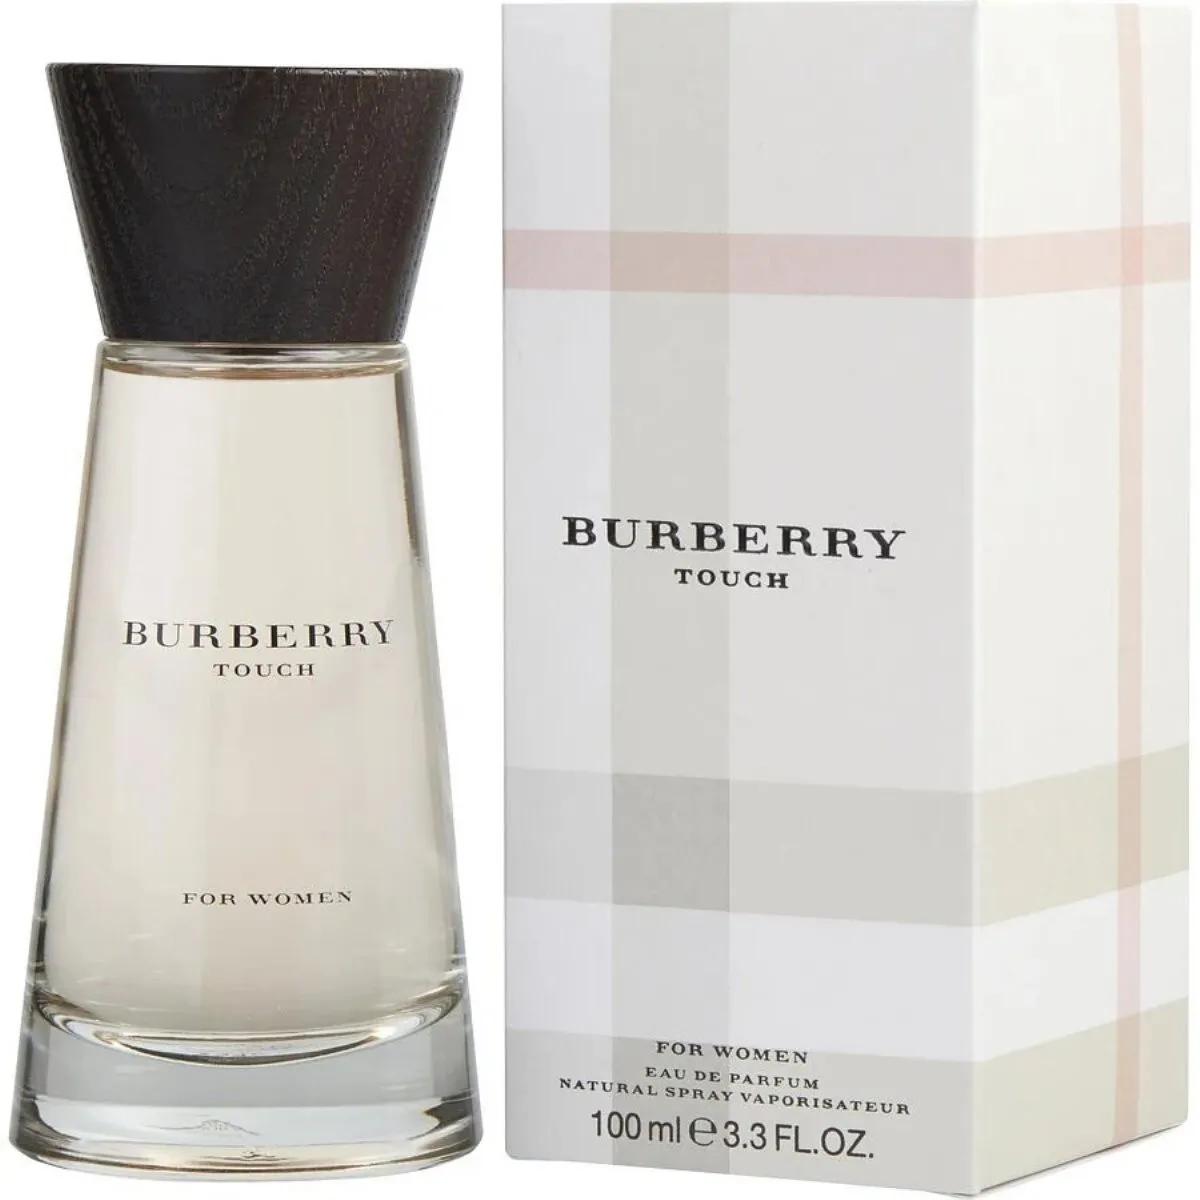 perfume burberry de mujer - Qué tipo de aroma es el perfume Burberry